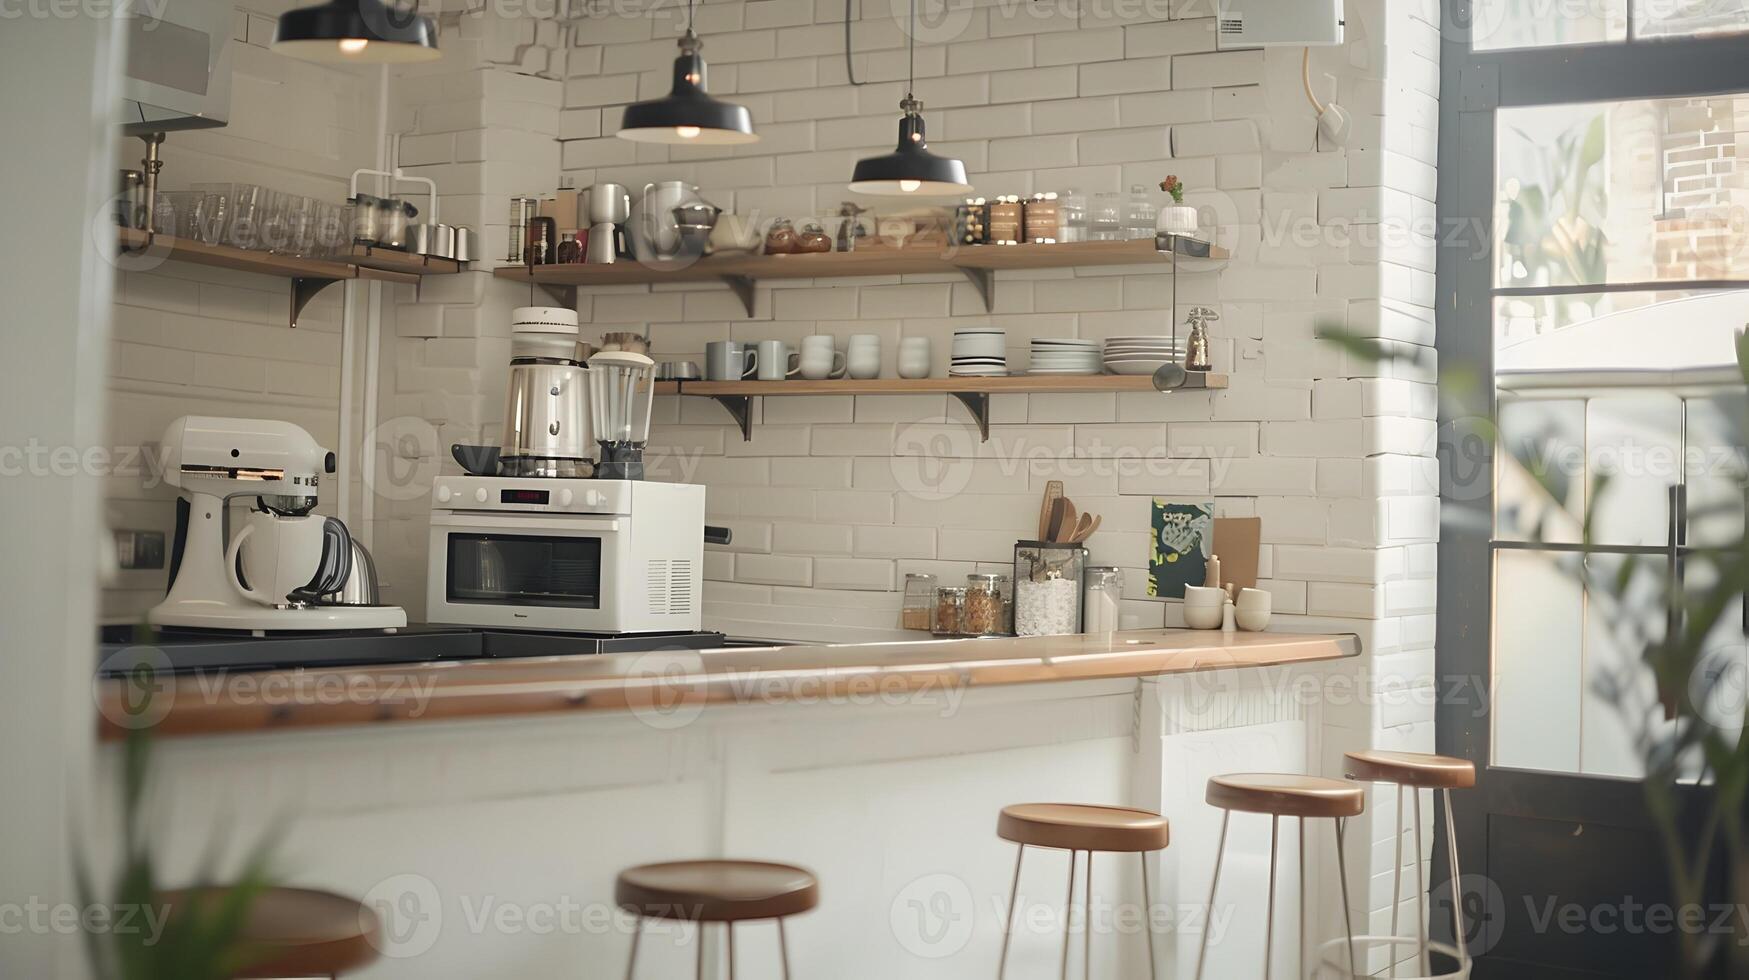 brilhante e acolhedor cozinha interior com prateleiras, eletrodomésticos e decoração elementos foto